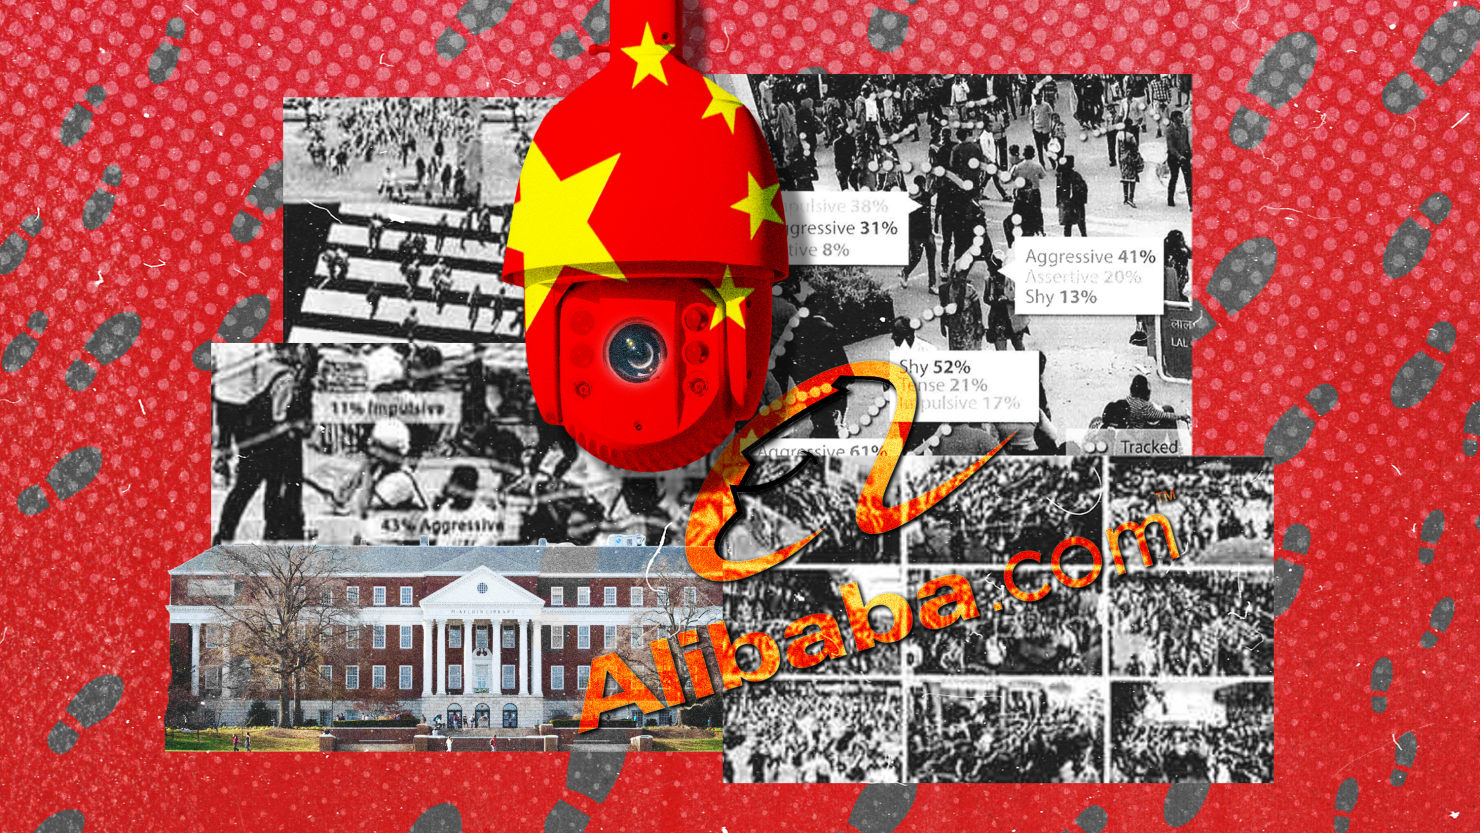 El profesor Star American ideó una máquina de vigilancia para las grandes tecnológicas chinas